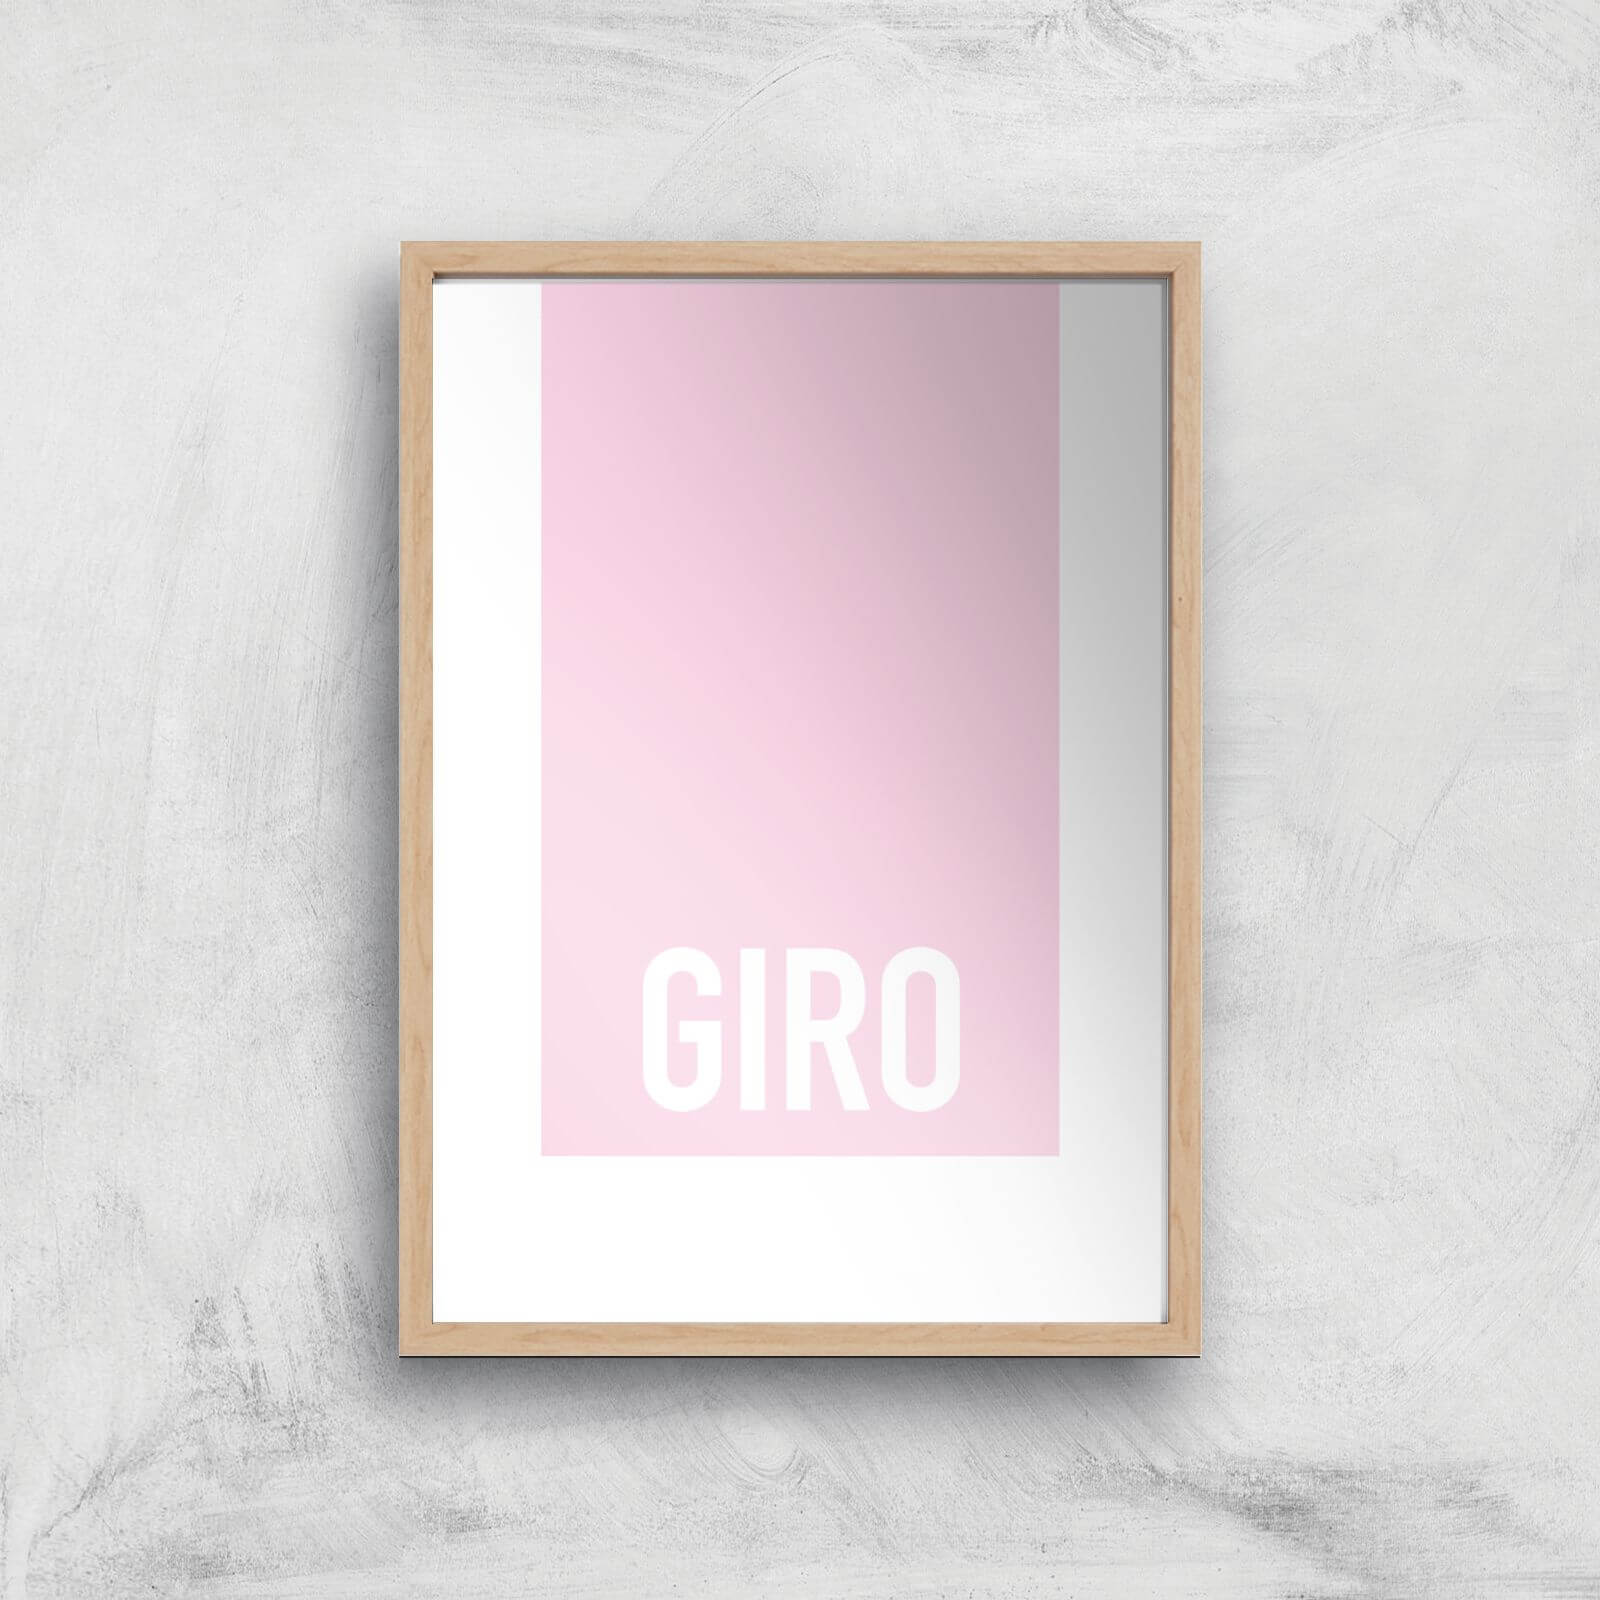 PBK Giro Giclee Art Print - A3 - Wooden Frame